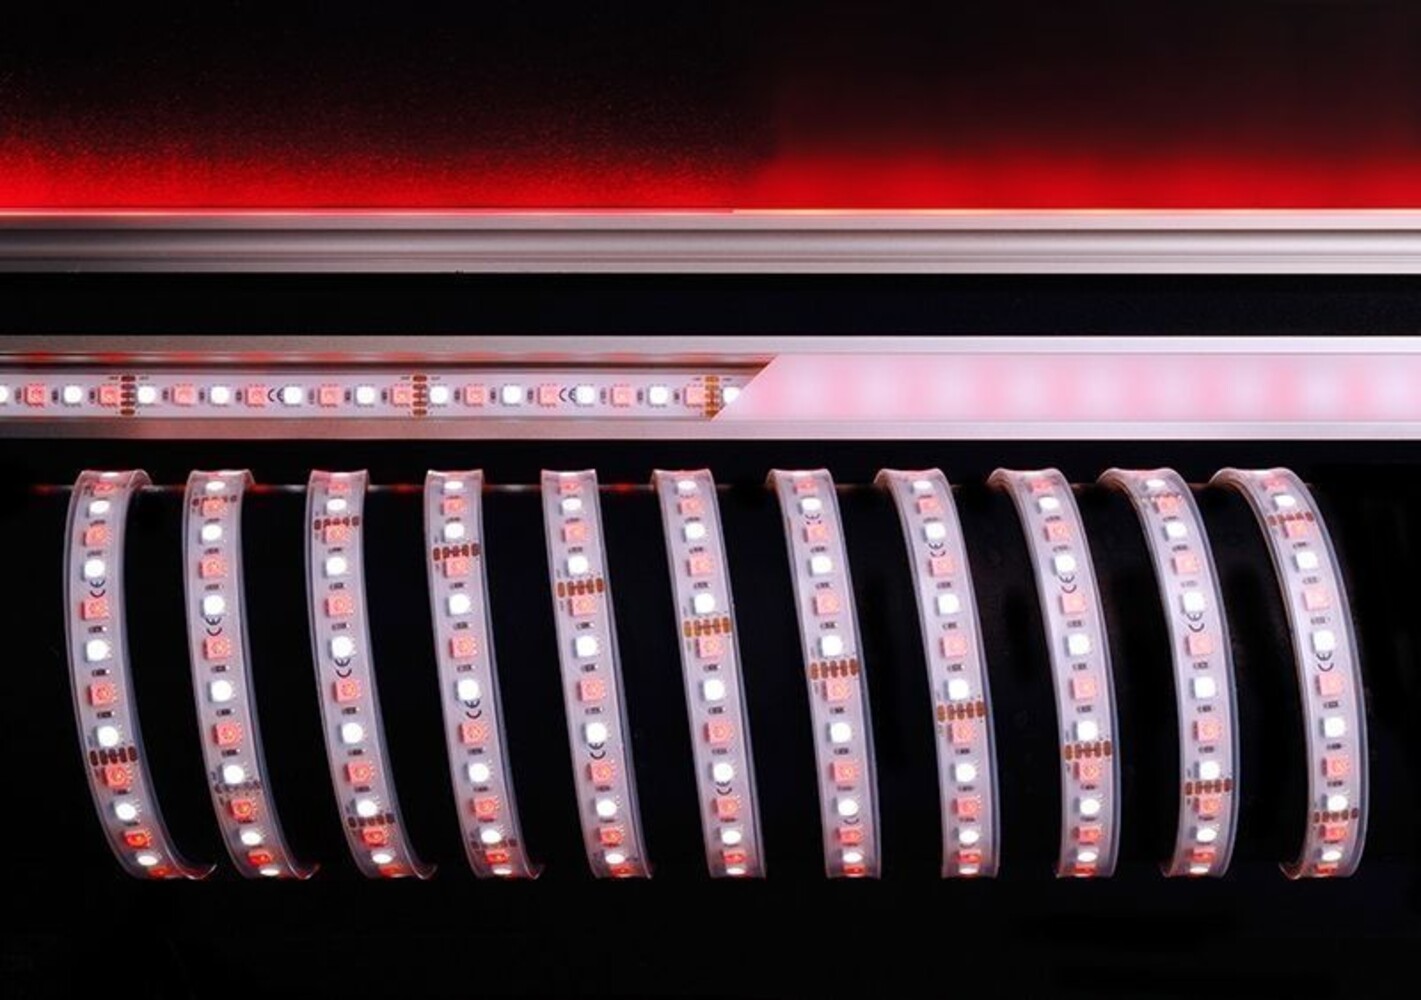 Stilvolles Bild eines flexiblen LED Streifens von der Marke Deko-Light.